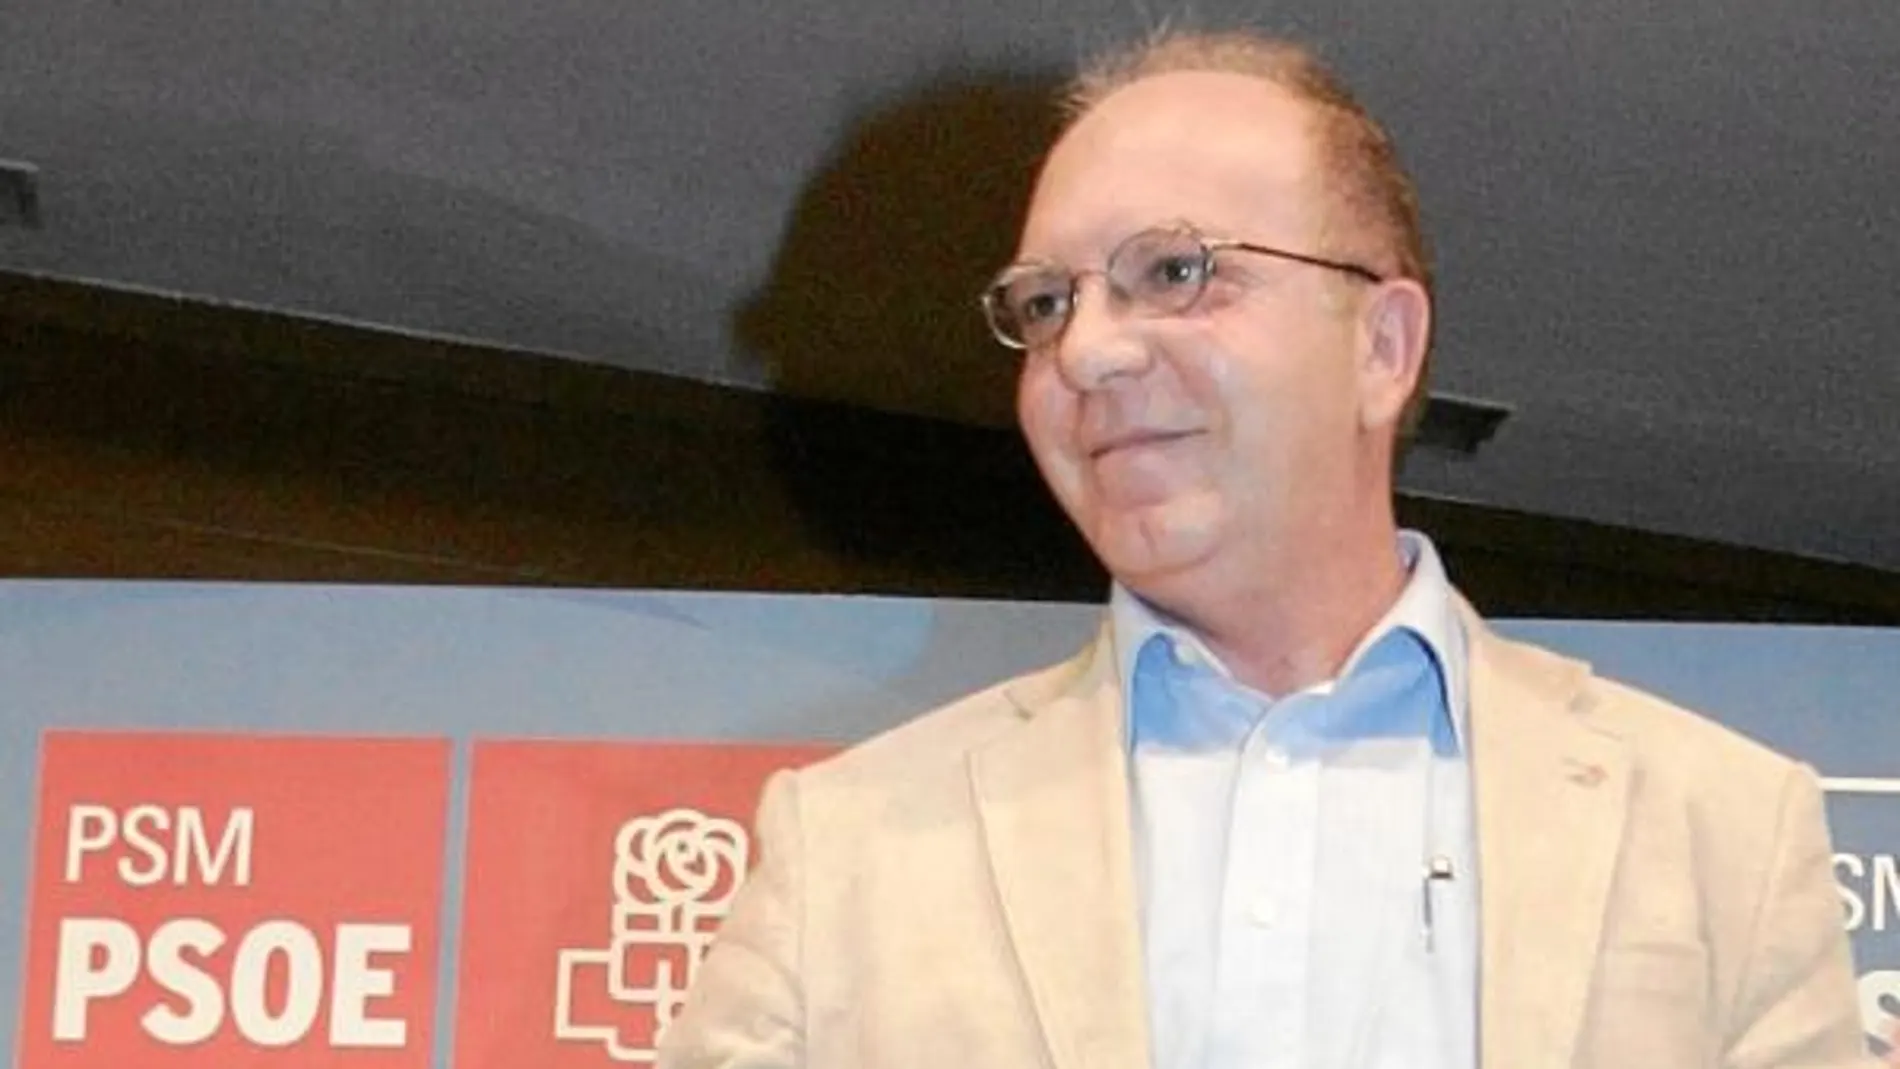 El concejal de Vivienda del PSOE ha querido adjudicar a Bruesa tres obras municipales. El PP paró dos de ellas, pero en 2009 remodeló una de las concejalías